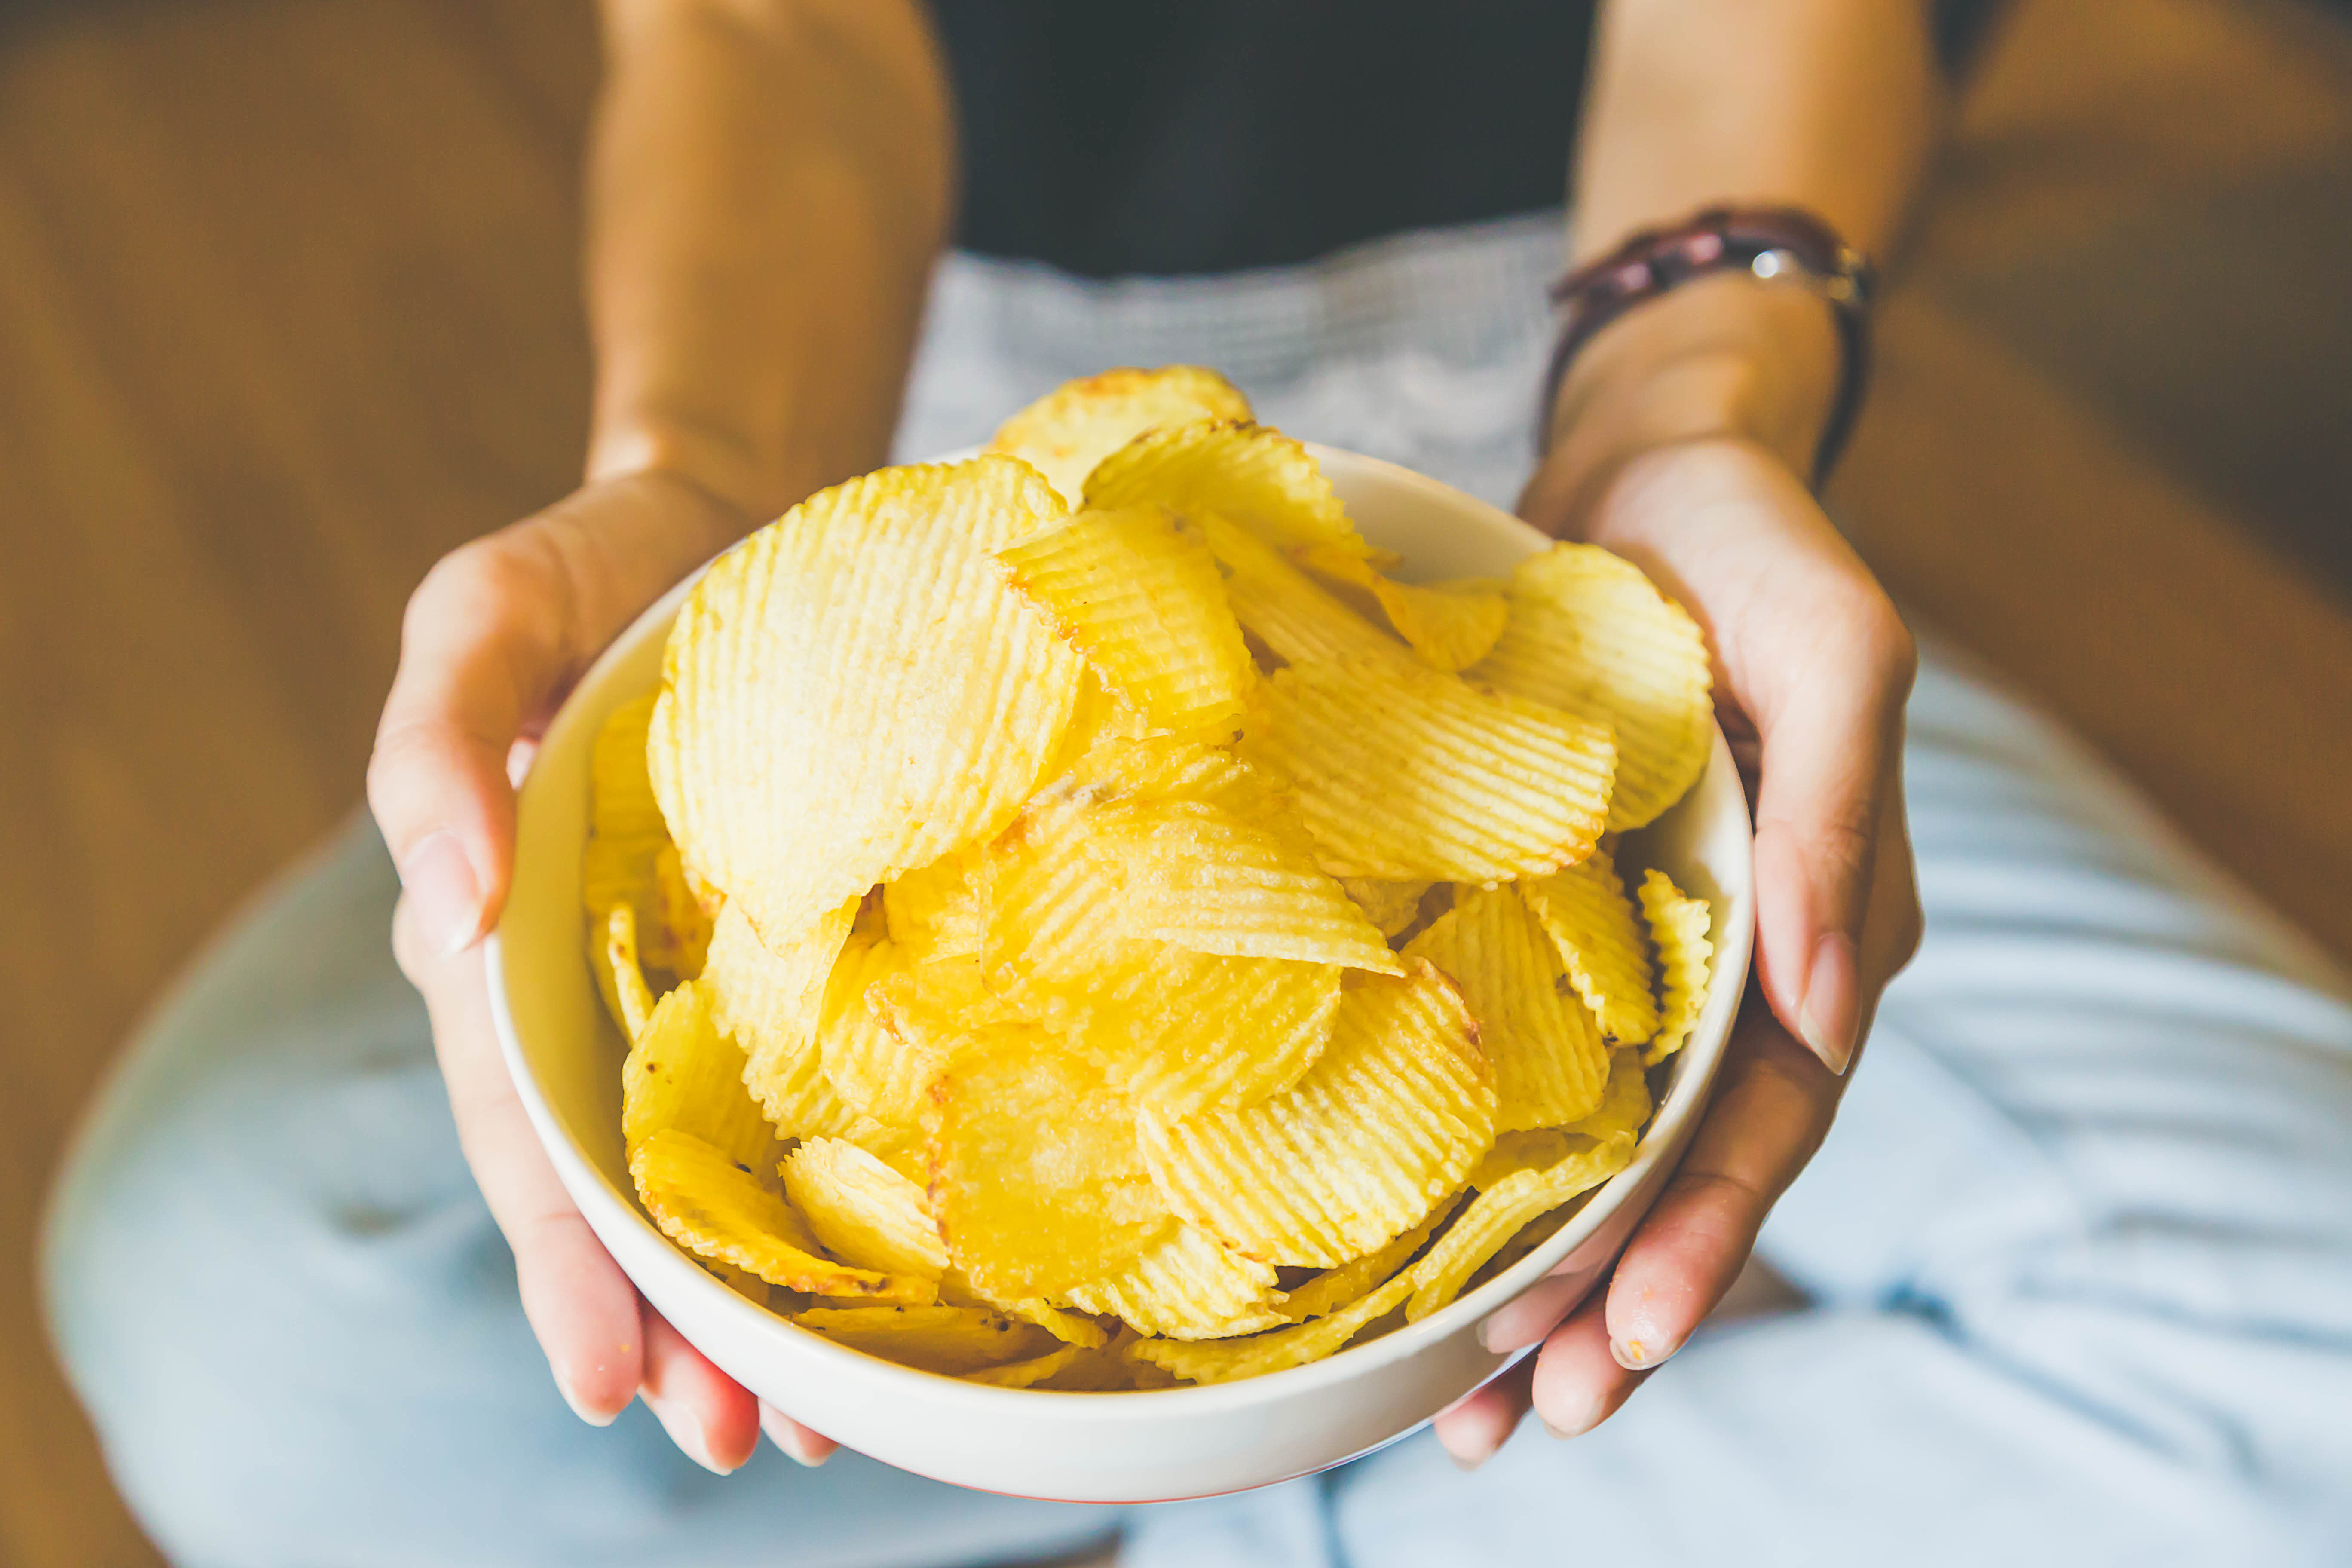 Une personne tenant un bol de chips | Source : Shutterstock